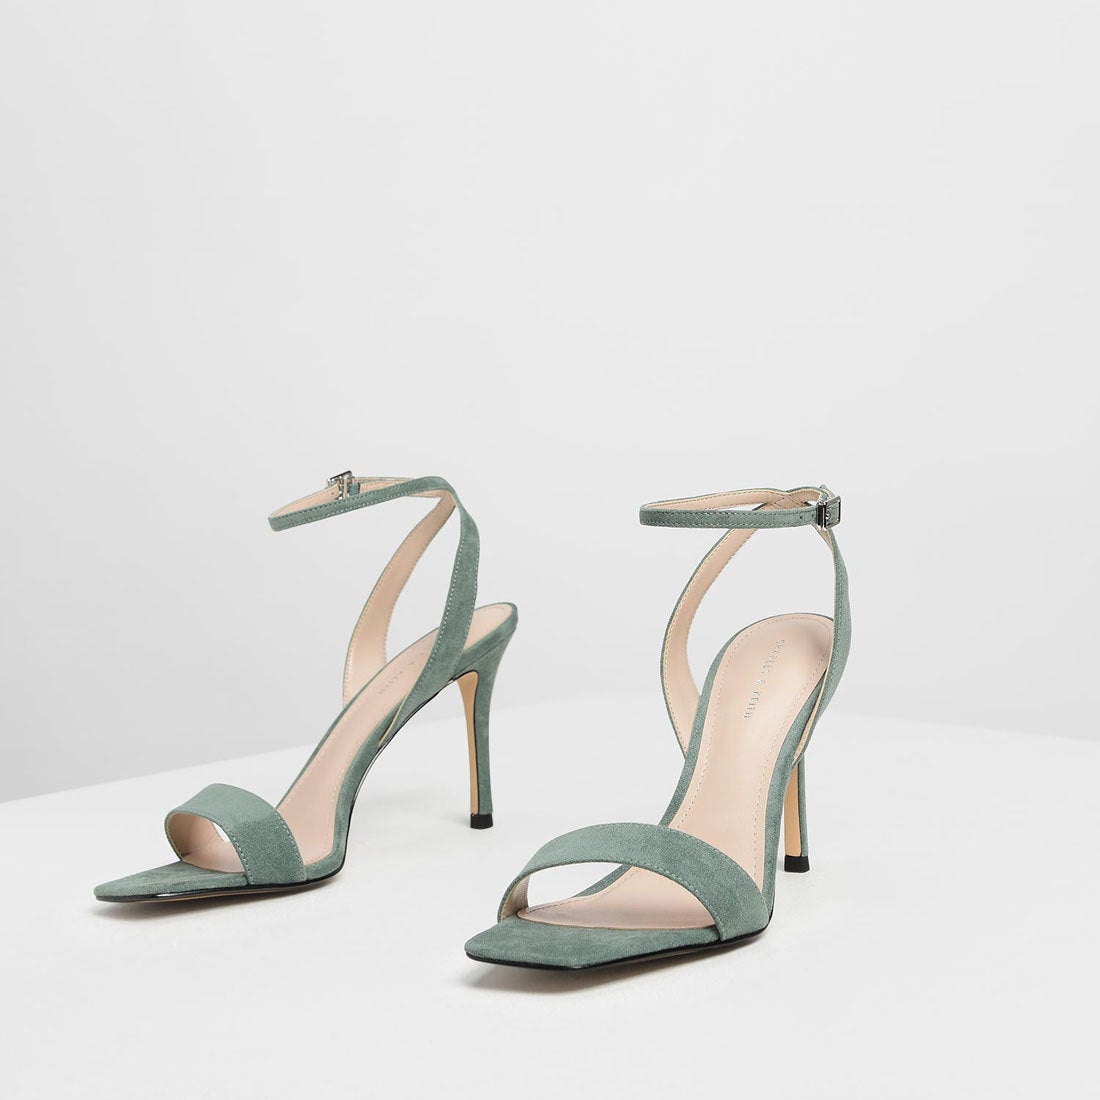 【再入荷】オープントゥアンクルストラップ スティレットサンダル / Open Toe Ankle Strap Stiletto Sandals  （Mint Green）